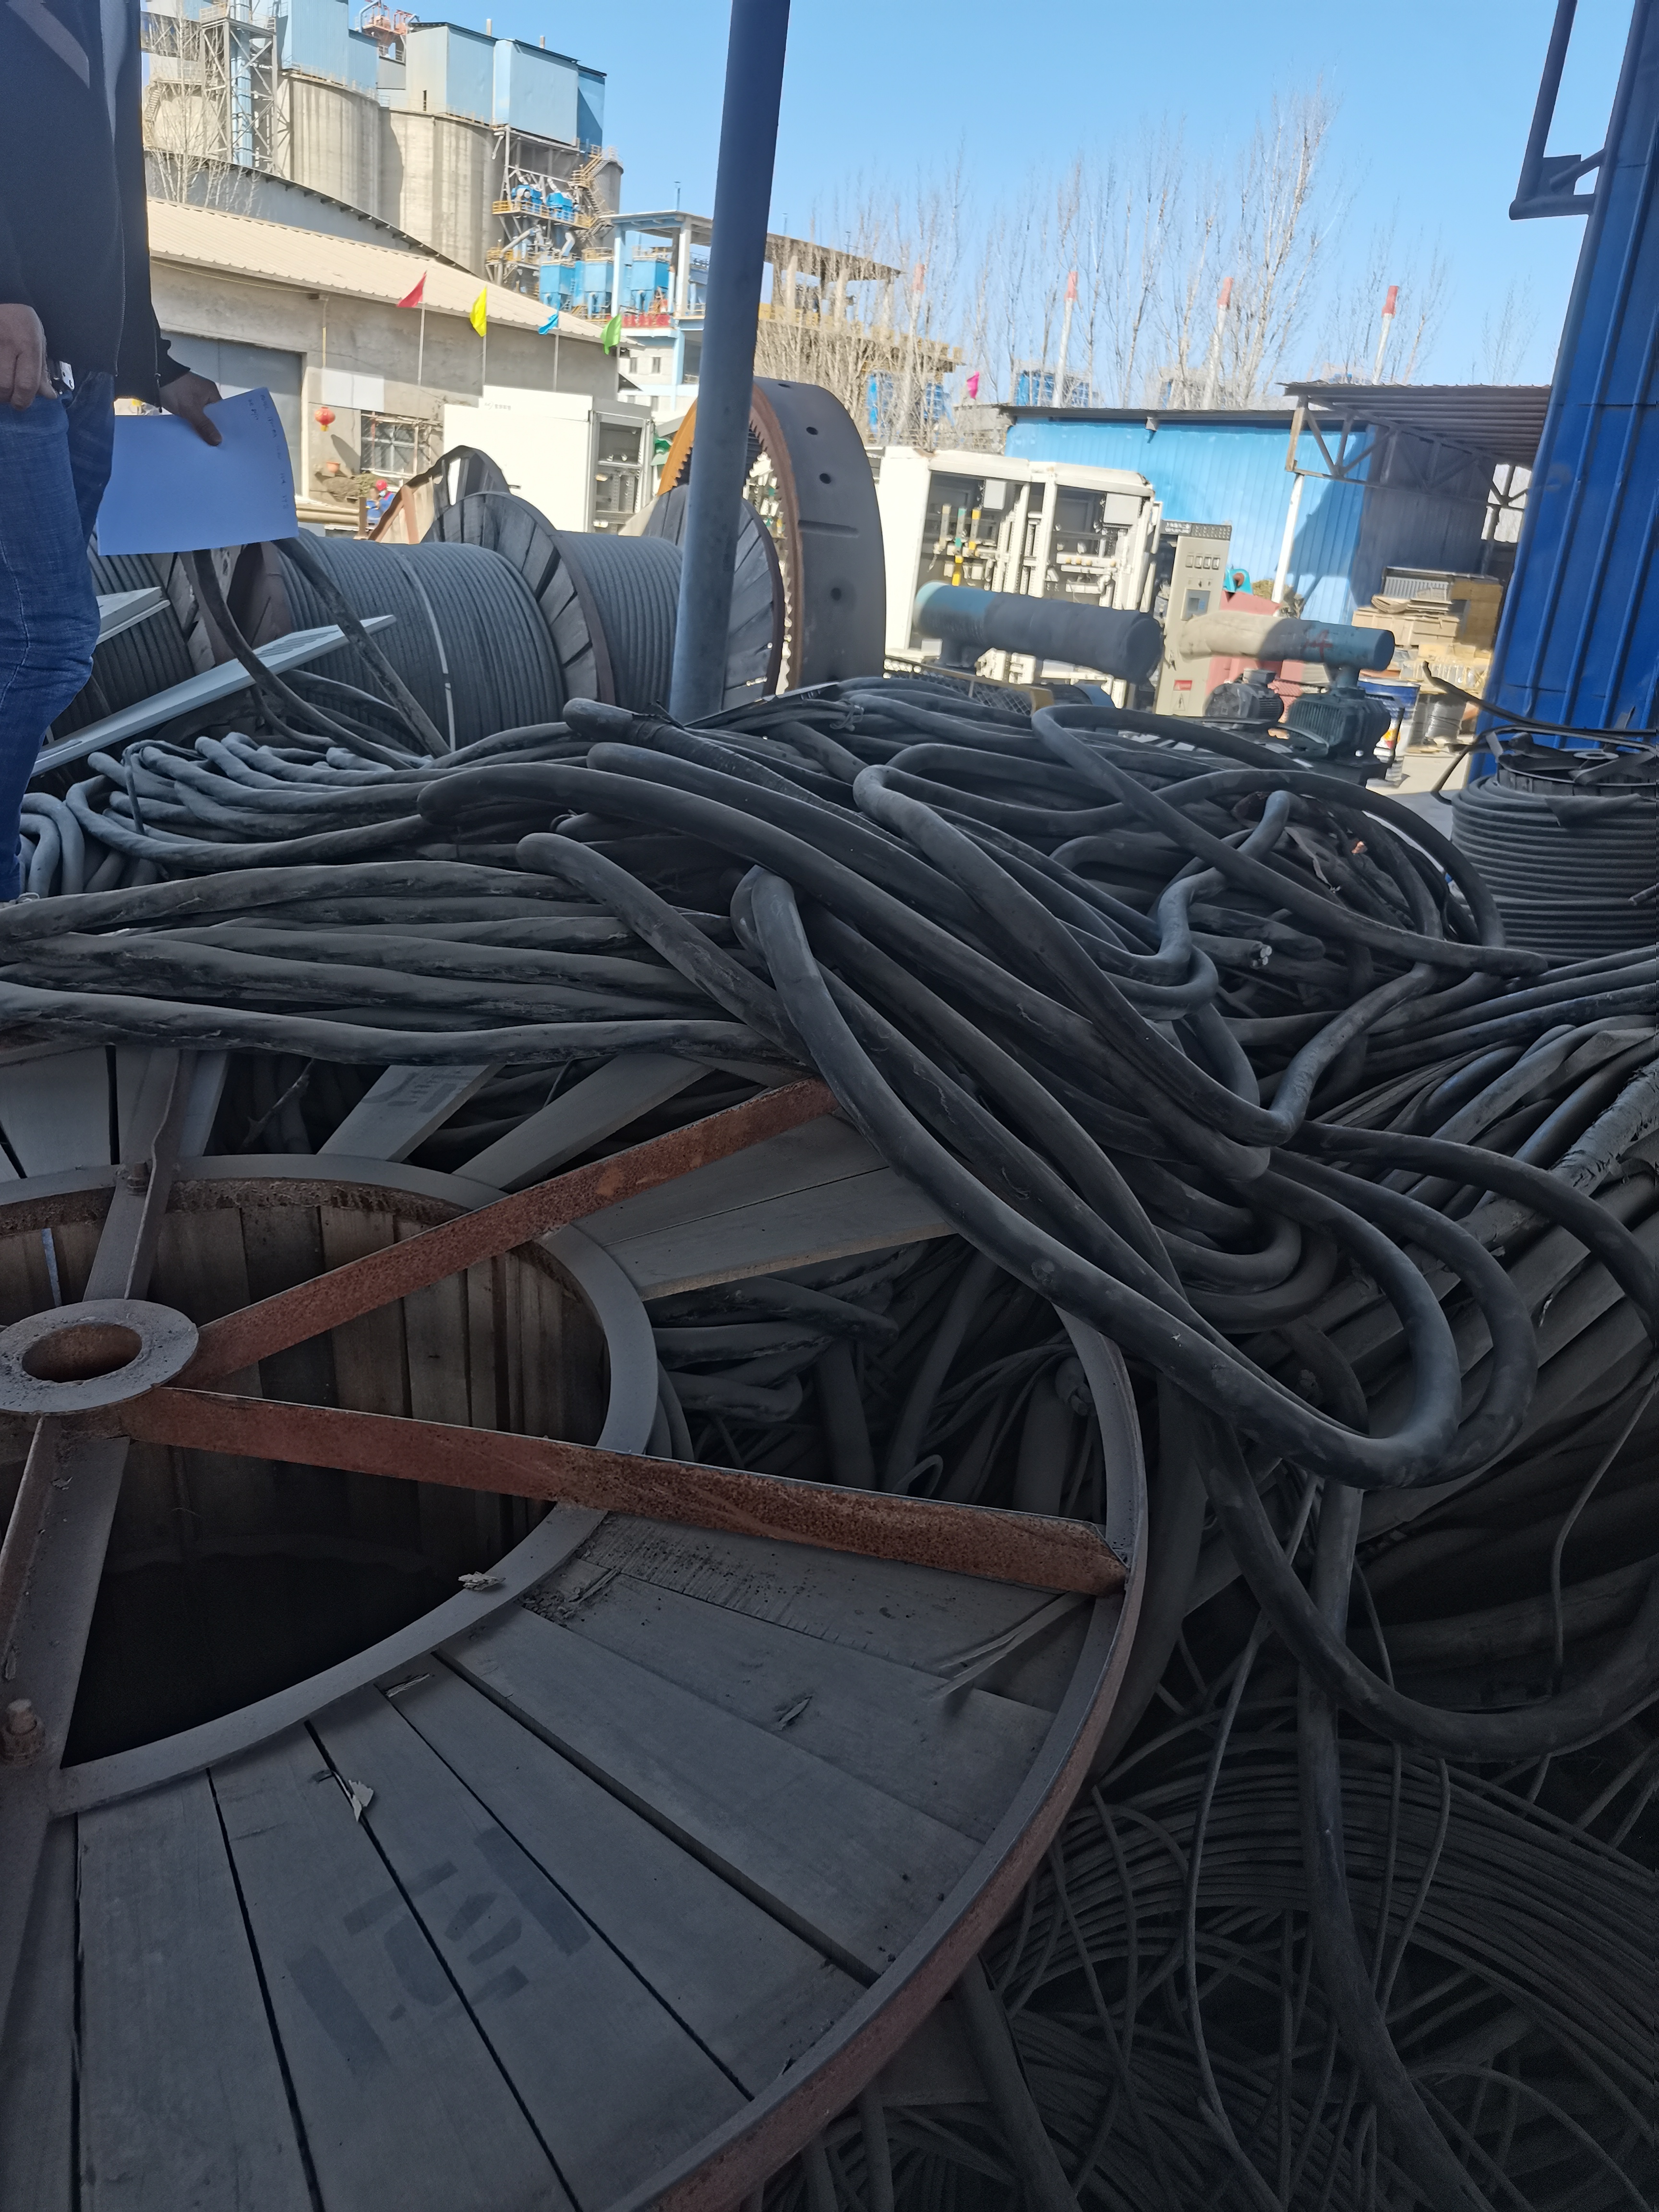 高低压电缆回收 海缆回收团队